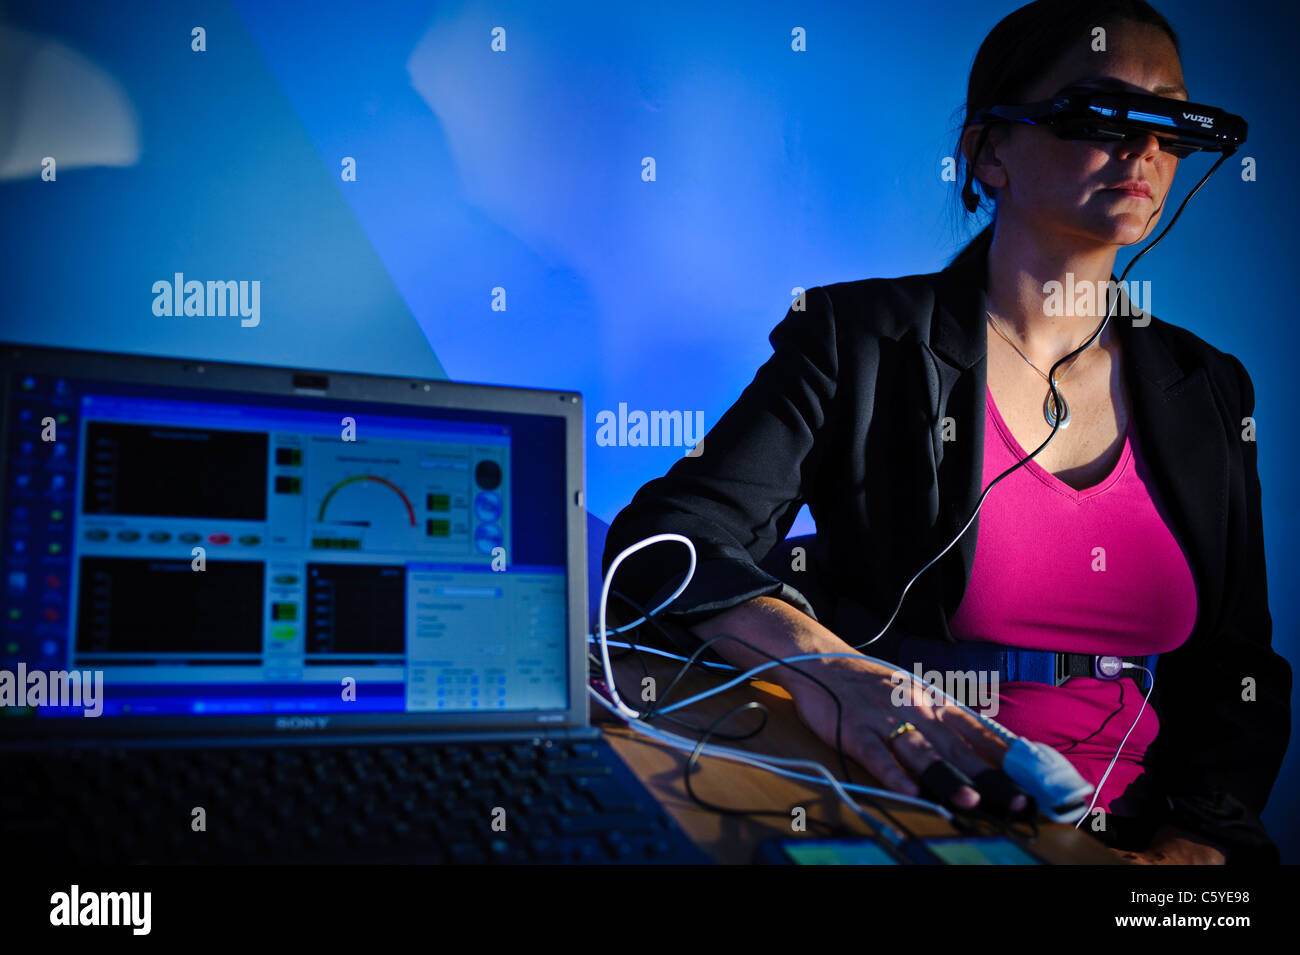 Sous réserve de porter des lunettes de réalité virtuelle dans l'étude scientifique pour traiter l'ordinateur portable de phobie qui montre les résultats à l'écran en premier plan blue Banque D'Images